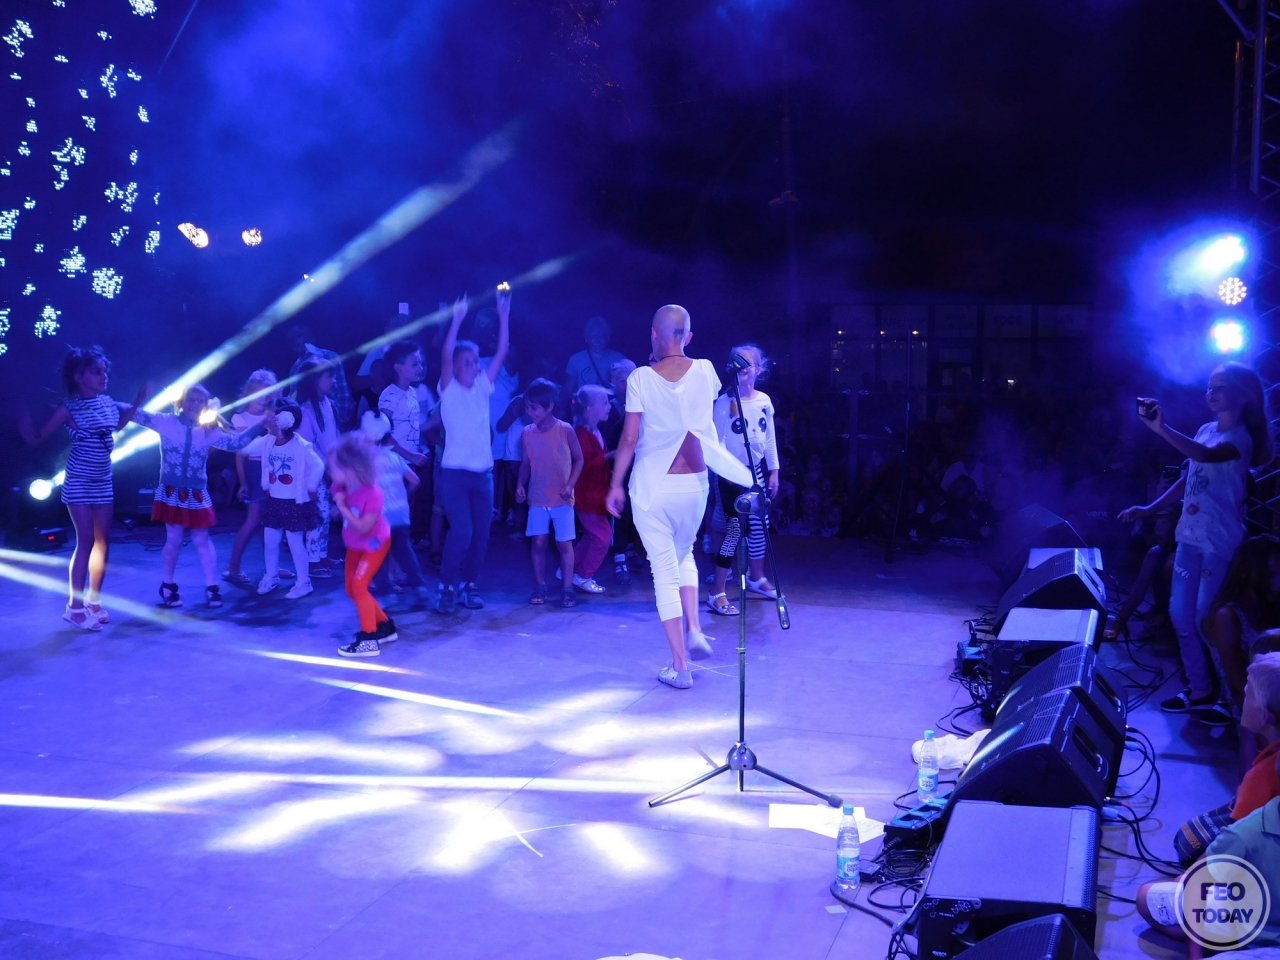 Фото концерта на День города 2017 и юбилей Айвазовского в Феодосии #2222